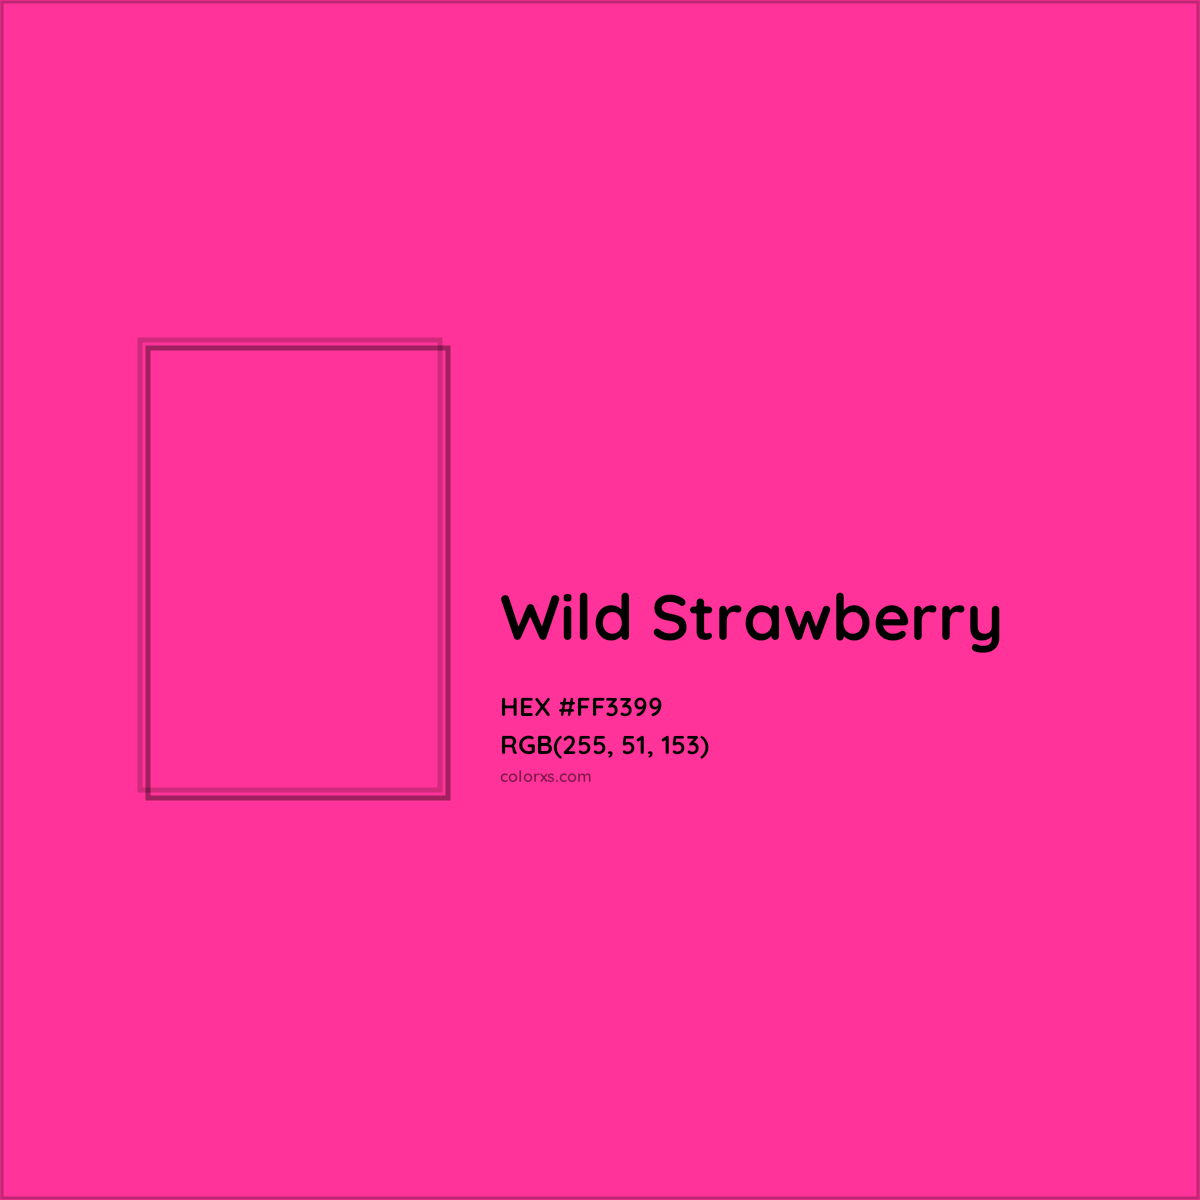 HEX #FF3399 Wild Strawberry Color Crayola Crayons - Color Code